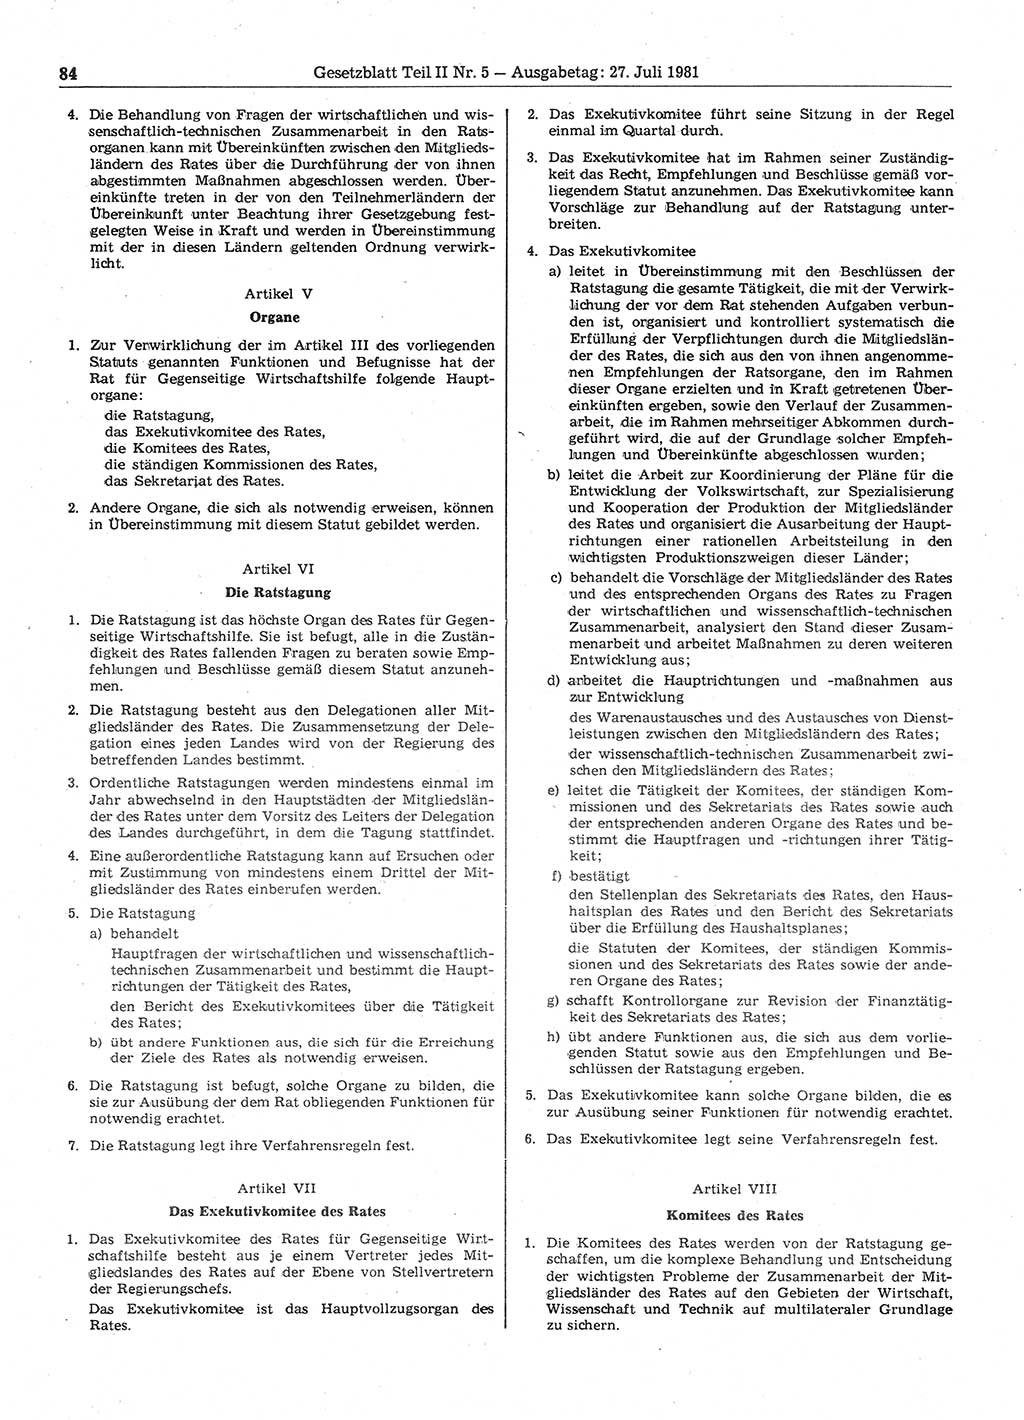 Gesetzblatt (GBl.) der Deutschen Demokratischen Republik (DDR) Teil ⅠⅠ 1981, Seite 84 (GBl. DDR ⅠⅠ 1981, S. 84)